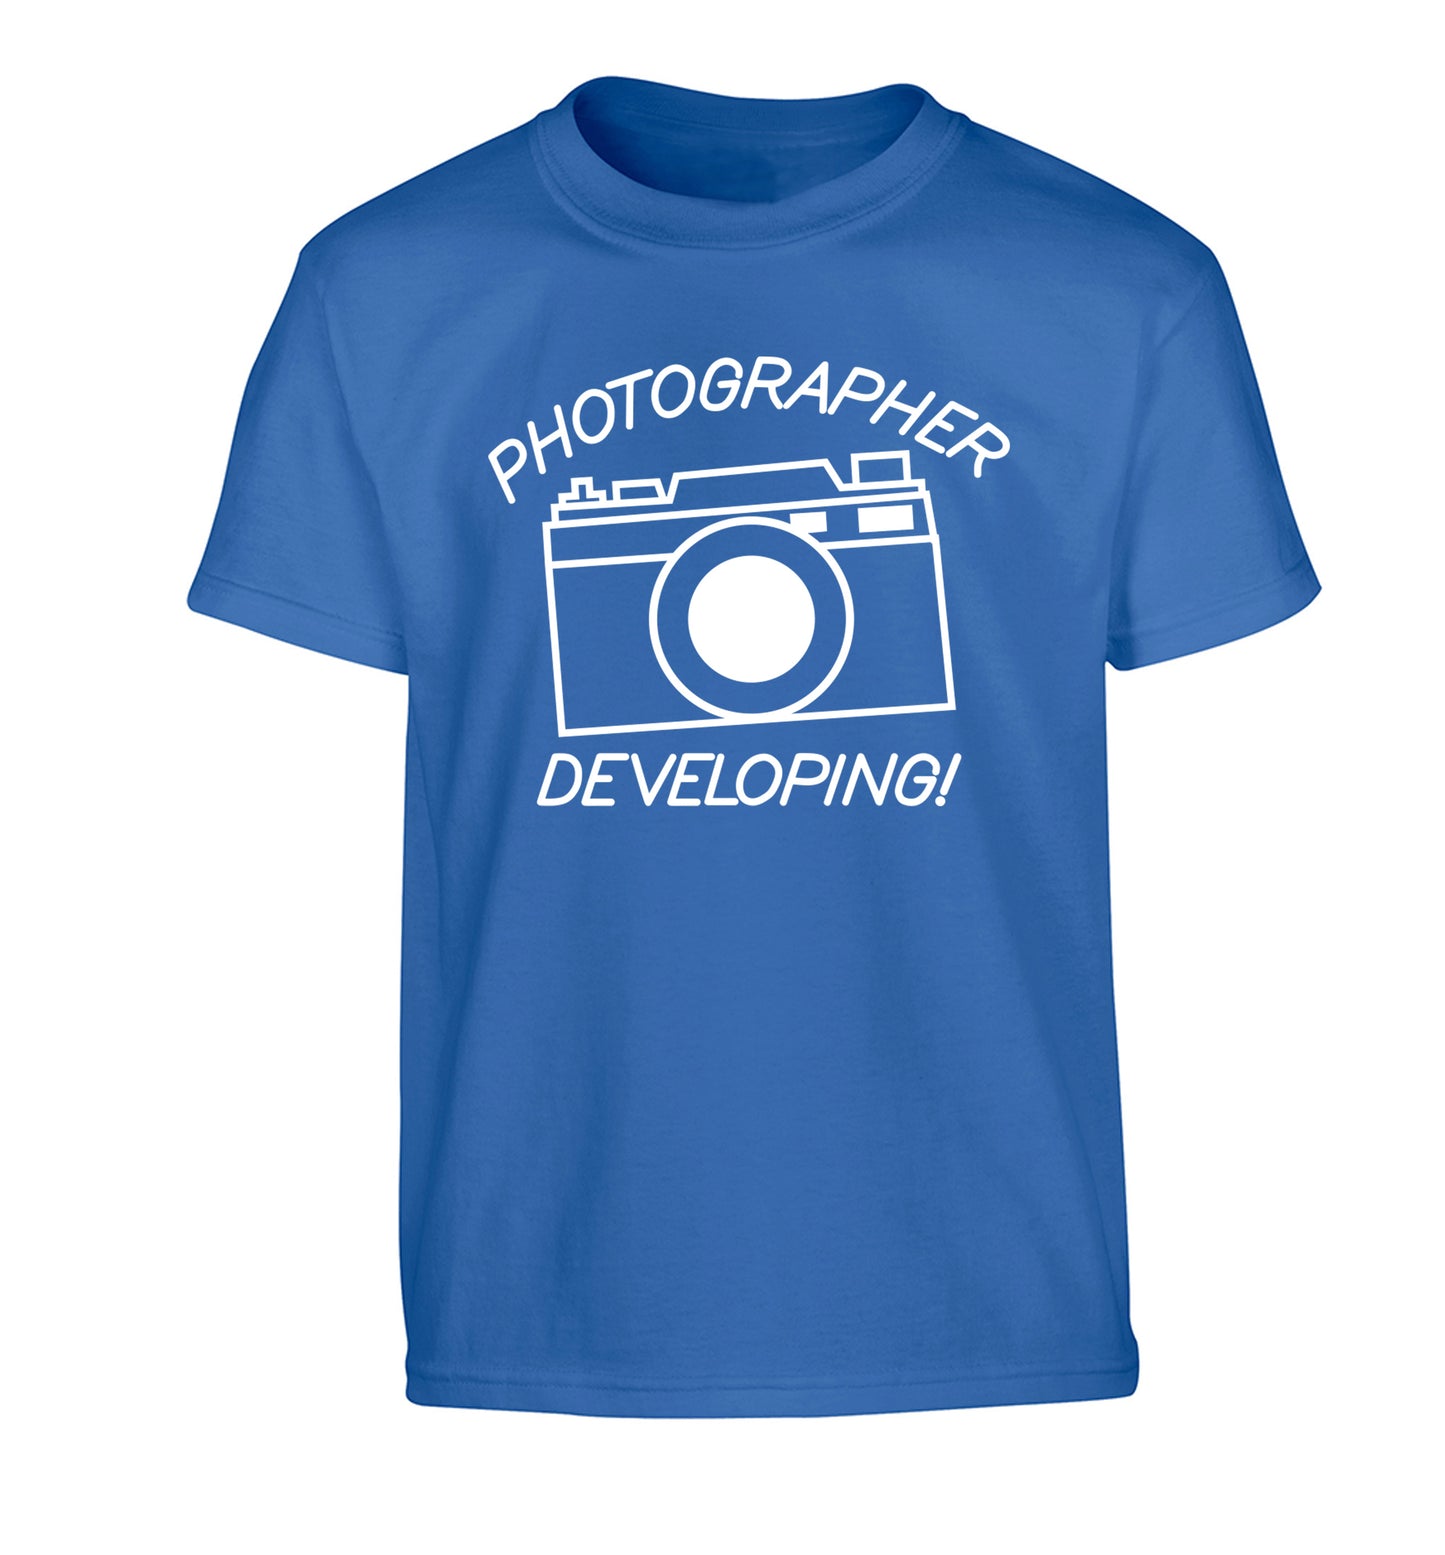 Photographer Developing  Children's blue Tshirt 12-13 Years